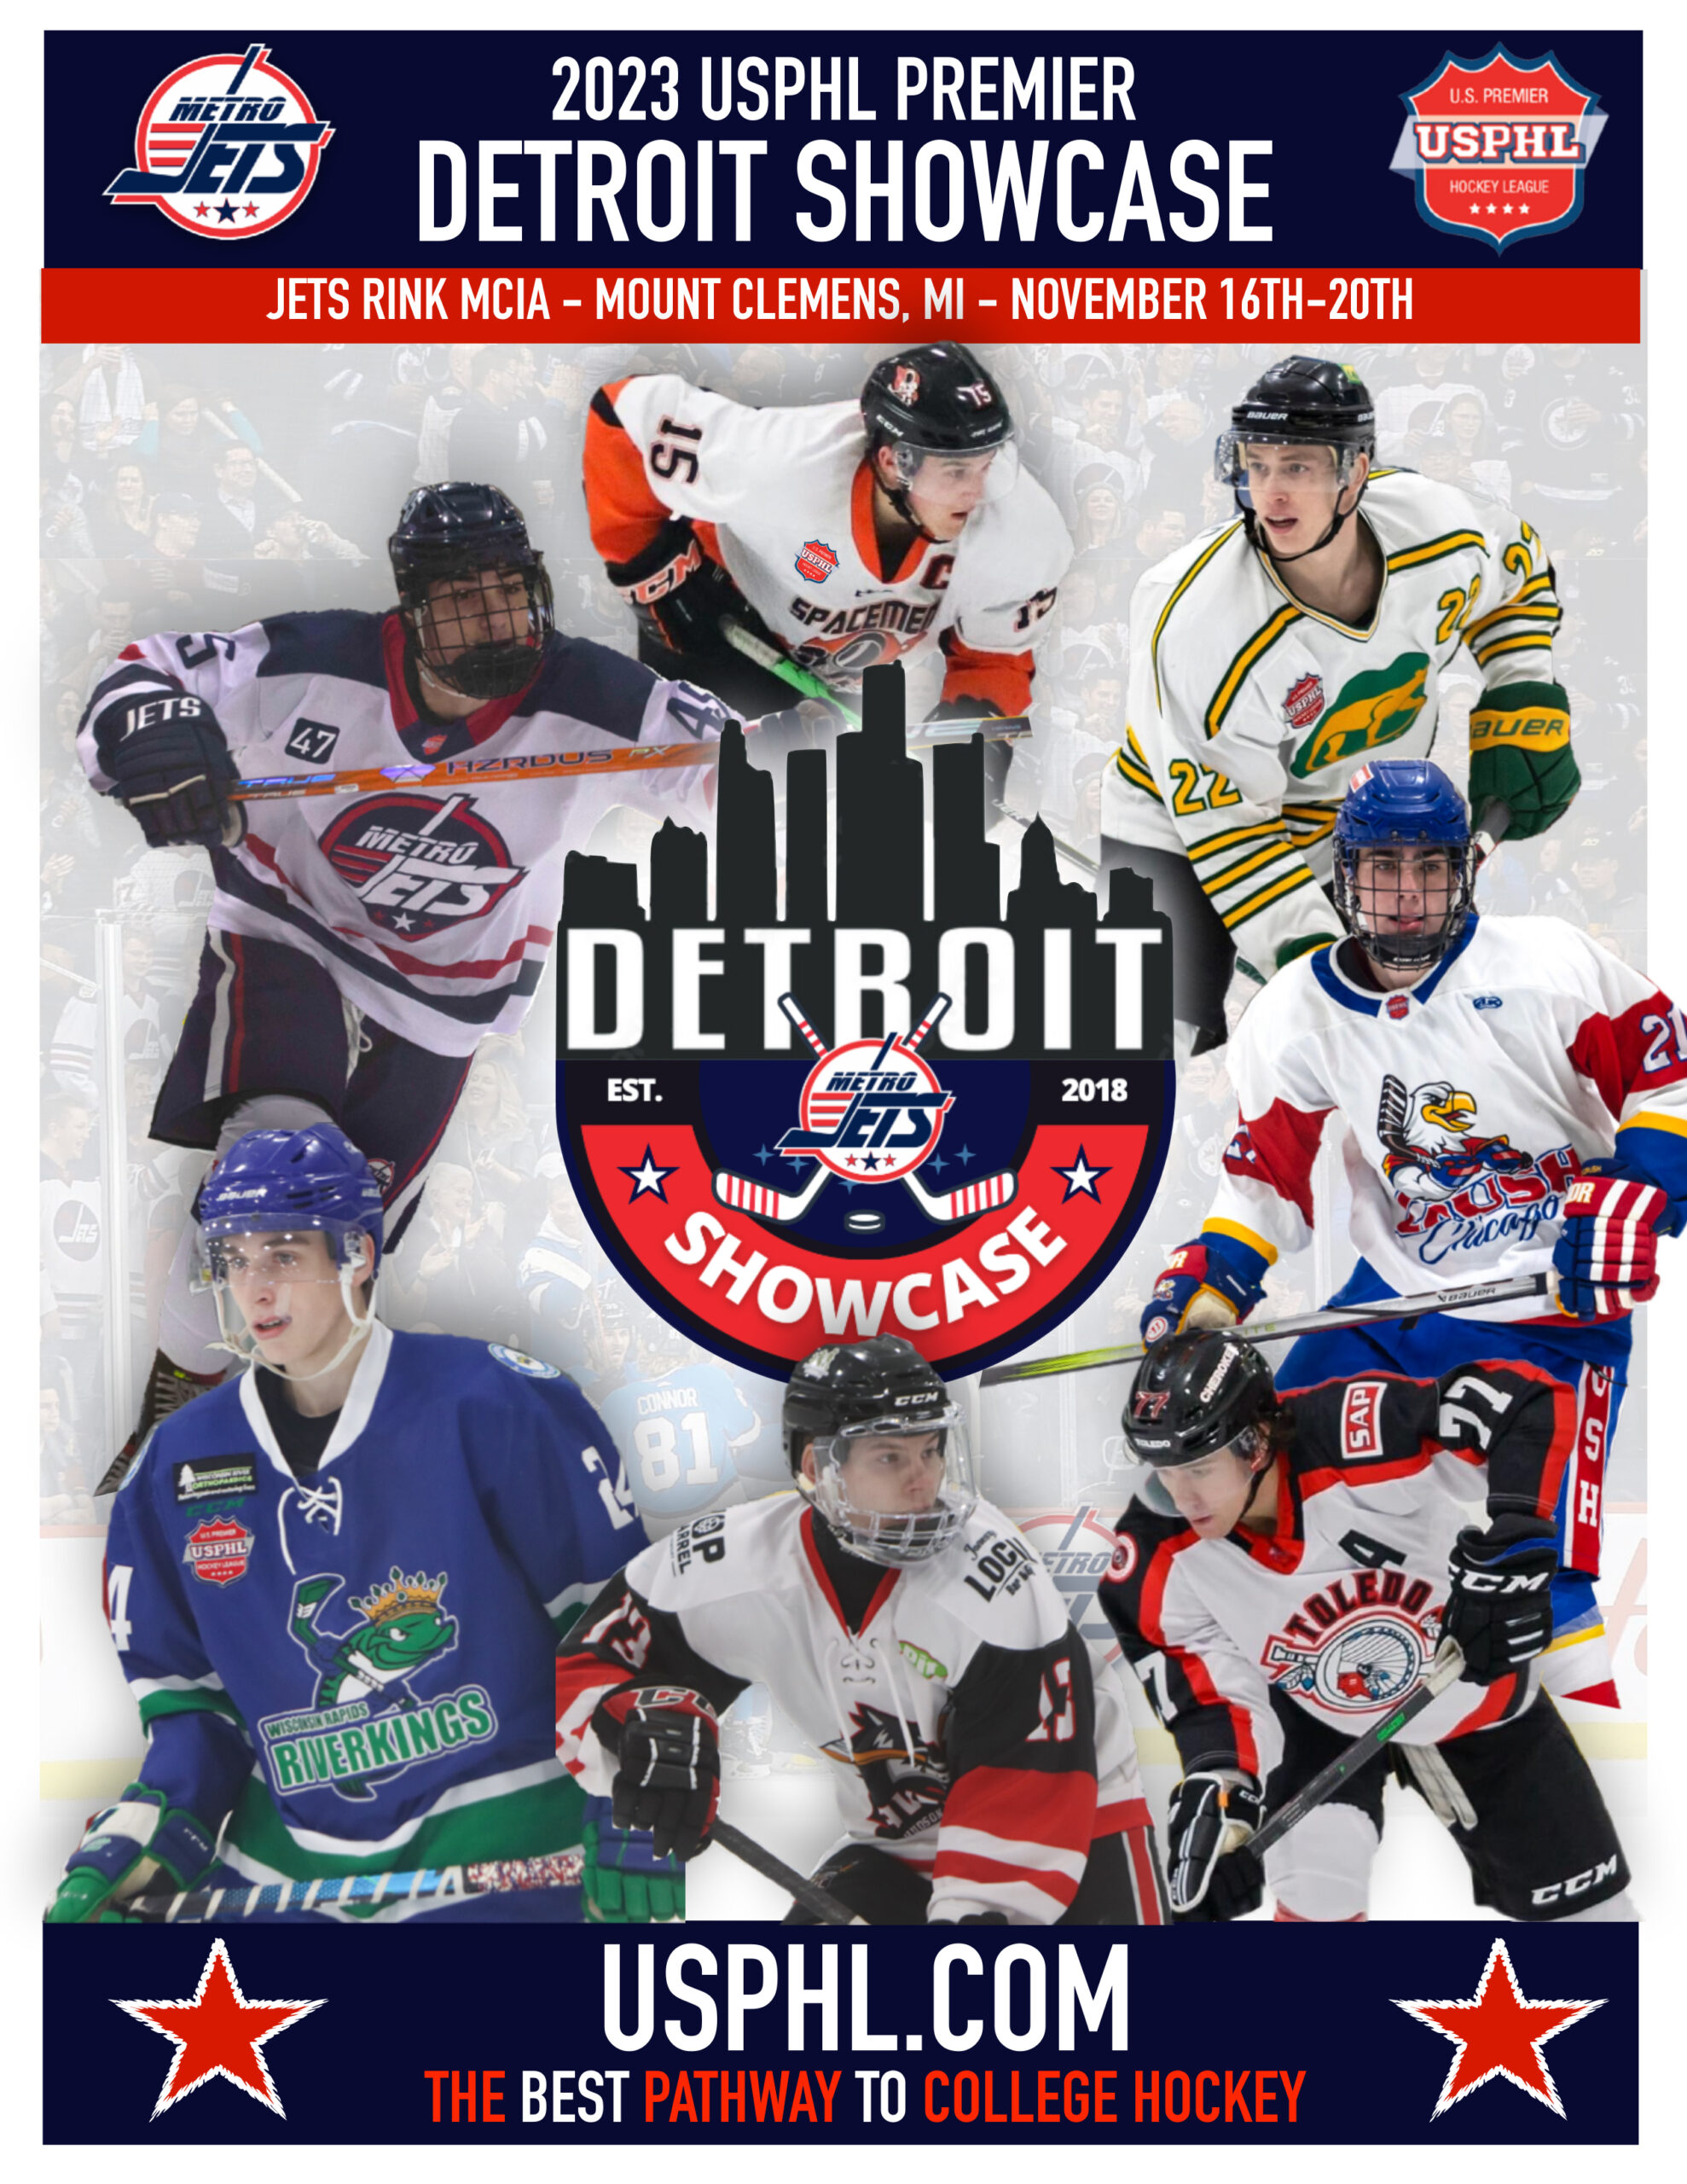 USPHL Detroit Showcase Features Premier, Elite Competition Over Five Days